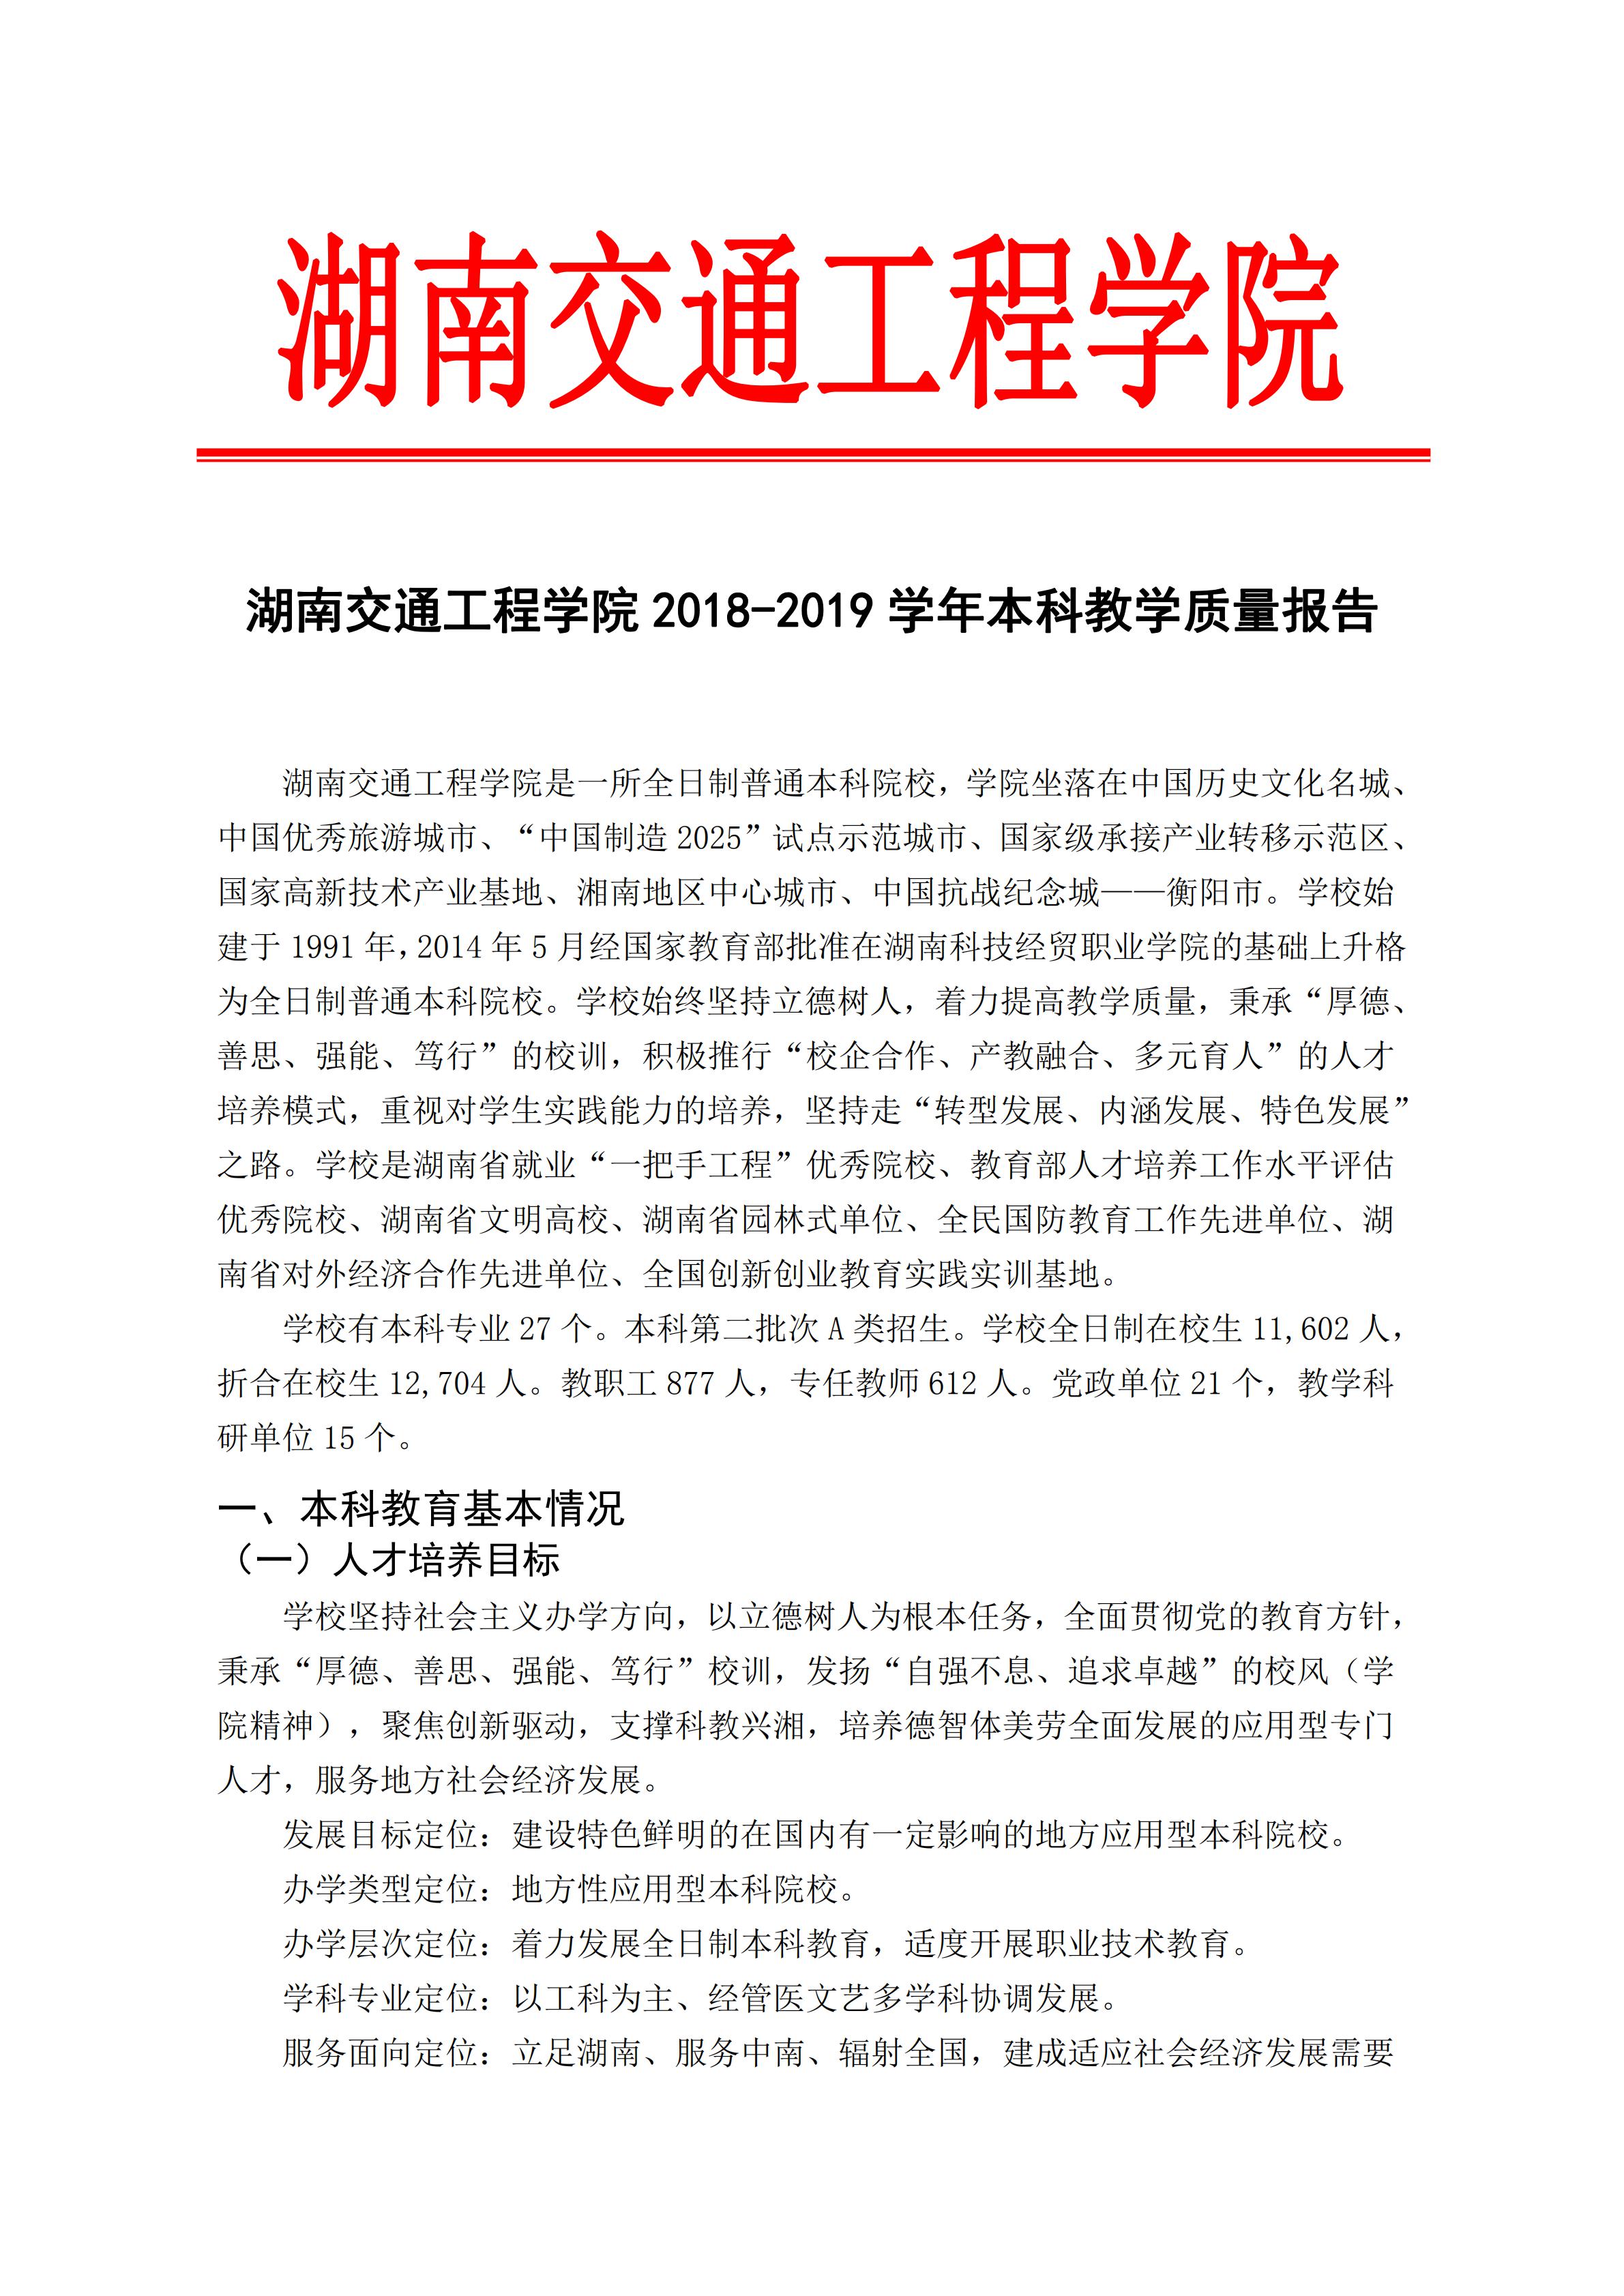 1.湖南交通工程学院2018-2019学年本科教学质量报告_00.jpg